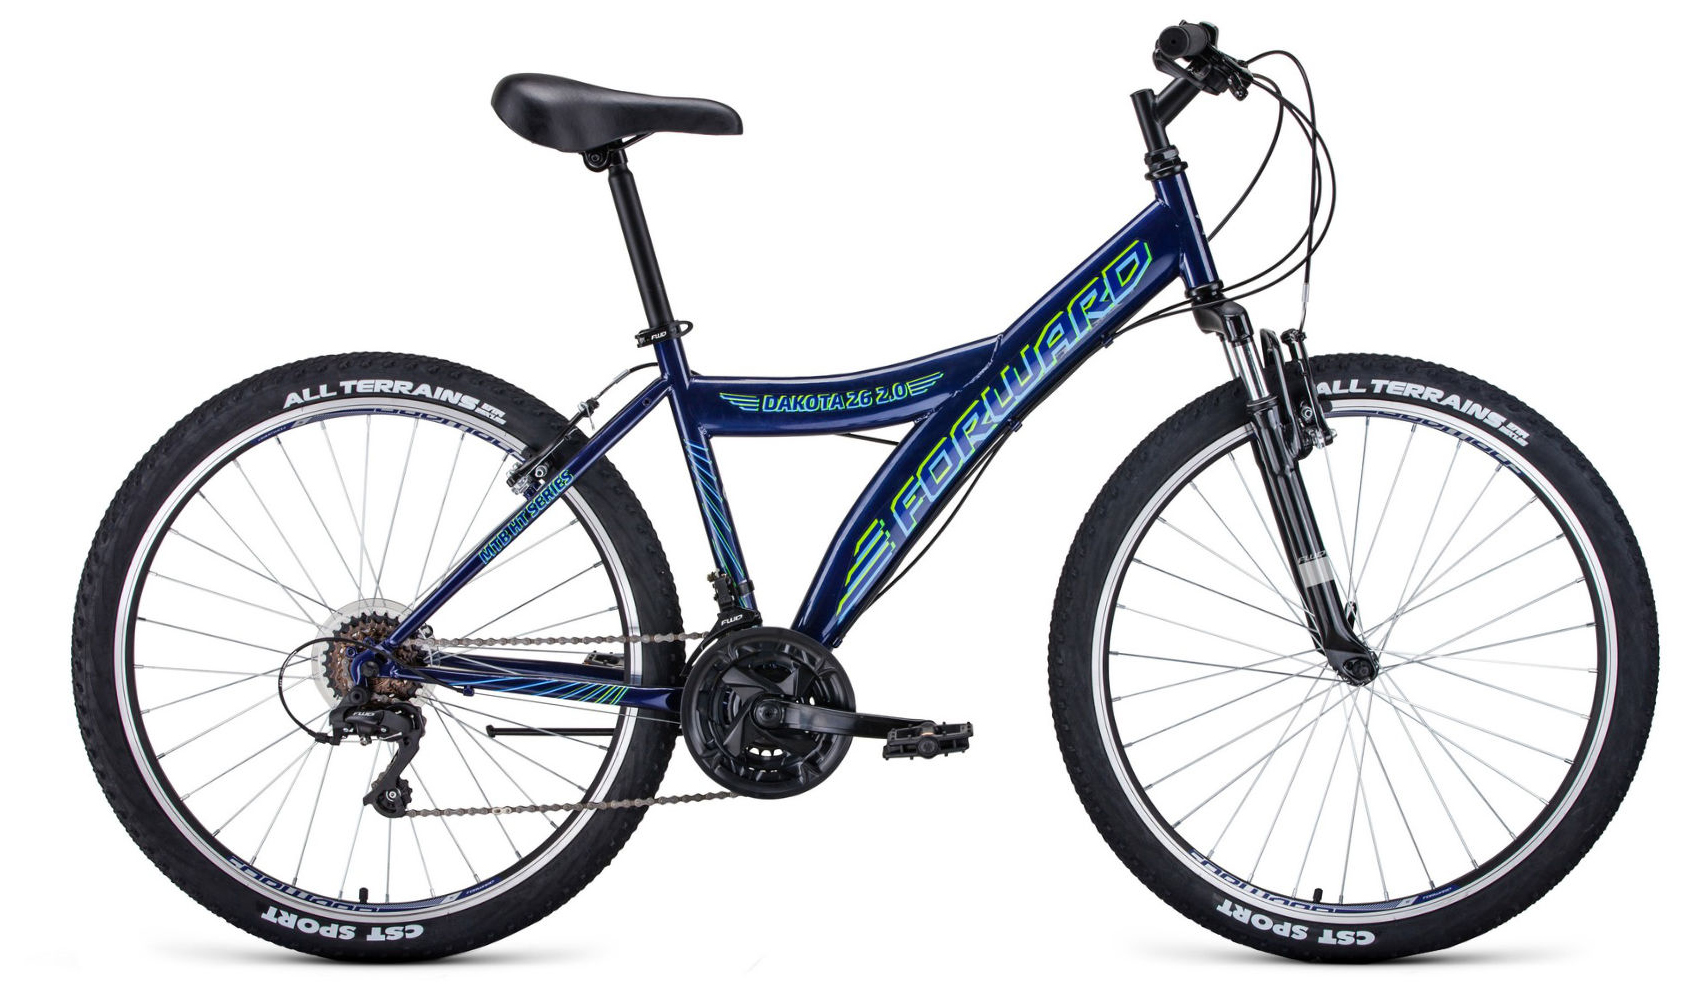  Отзывы о Горном велосипеде Forward Dakota 26 2.0 2020